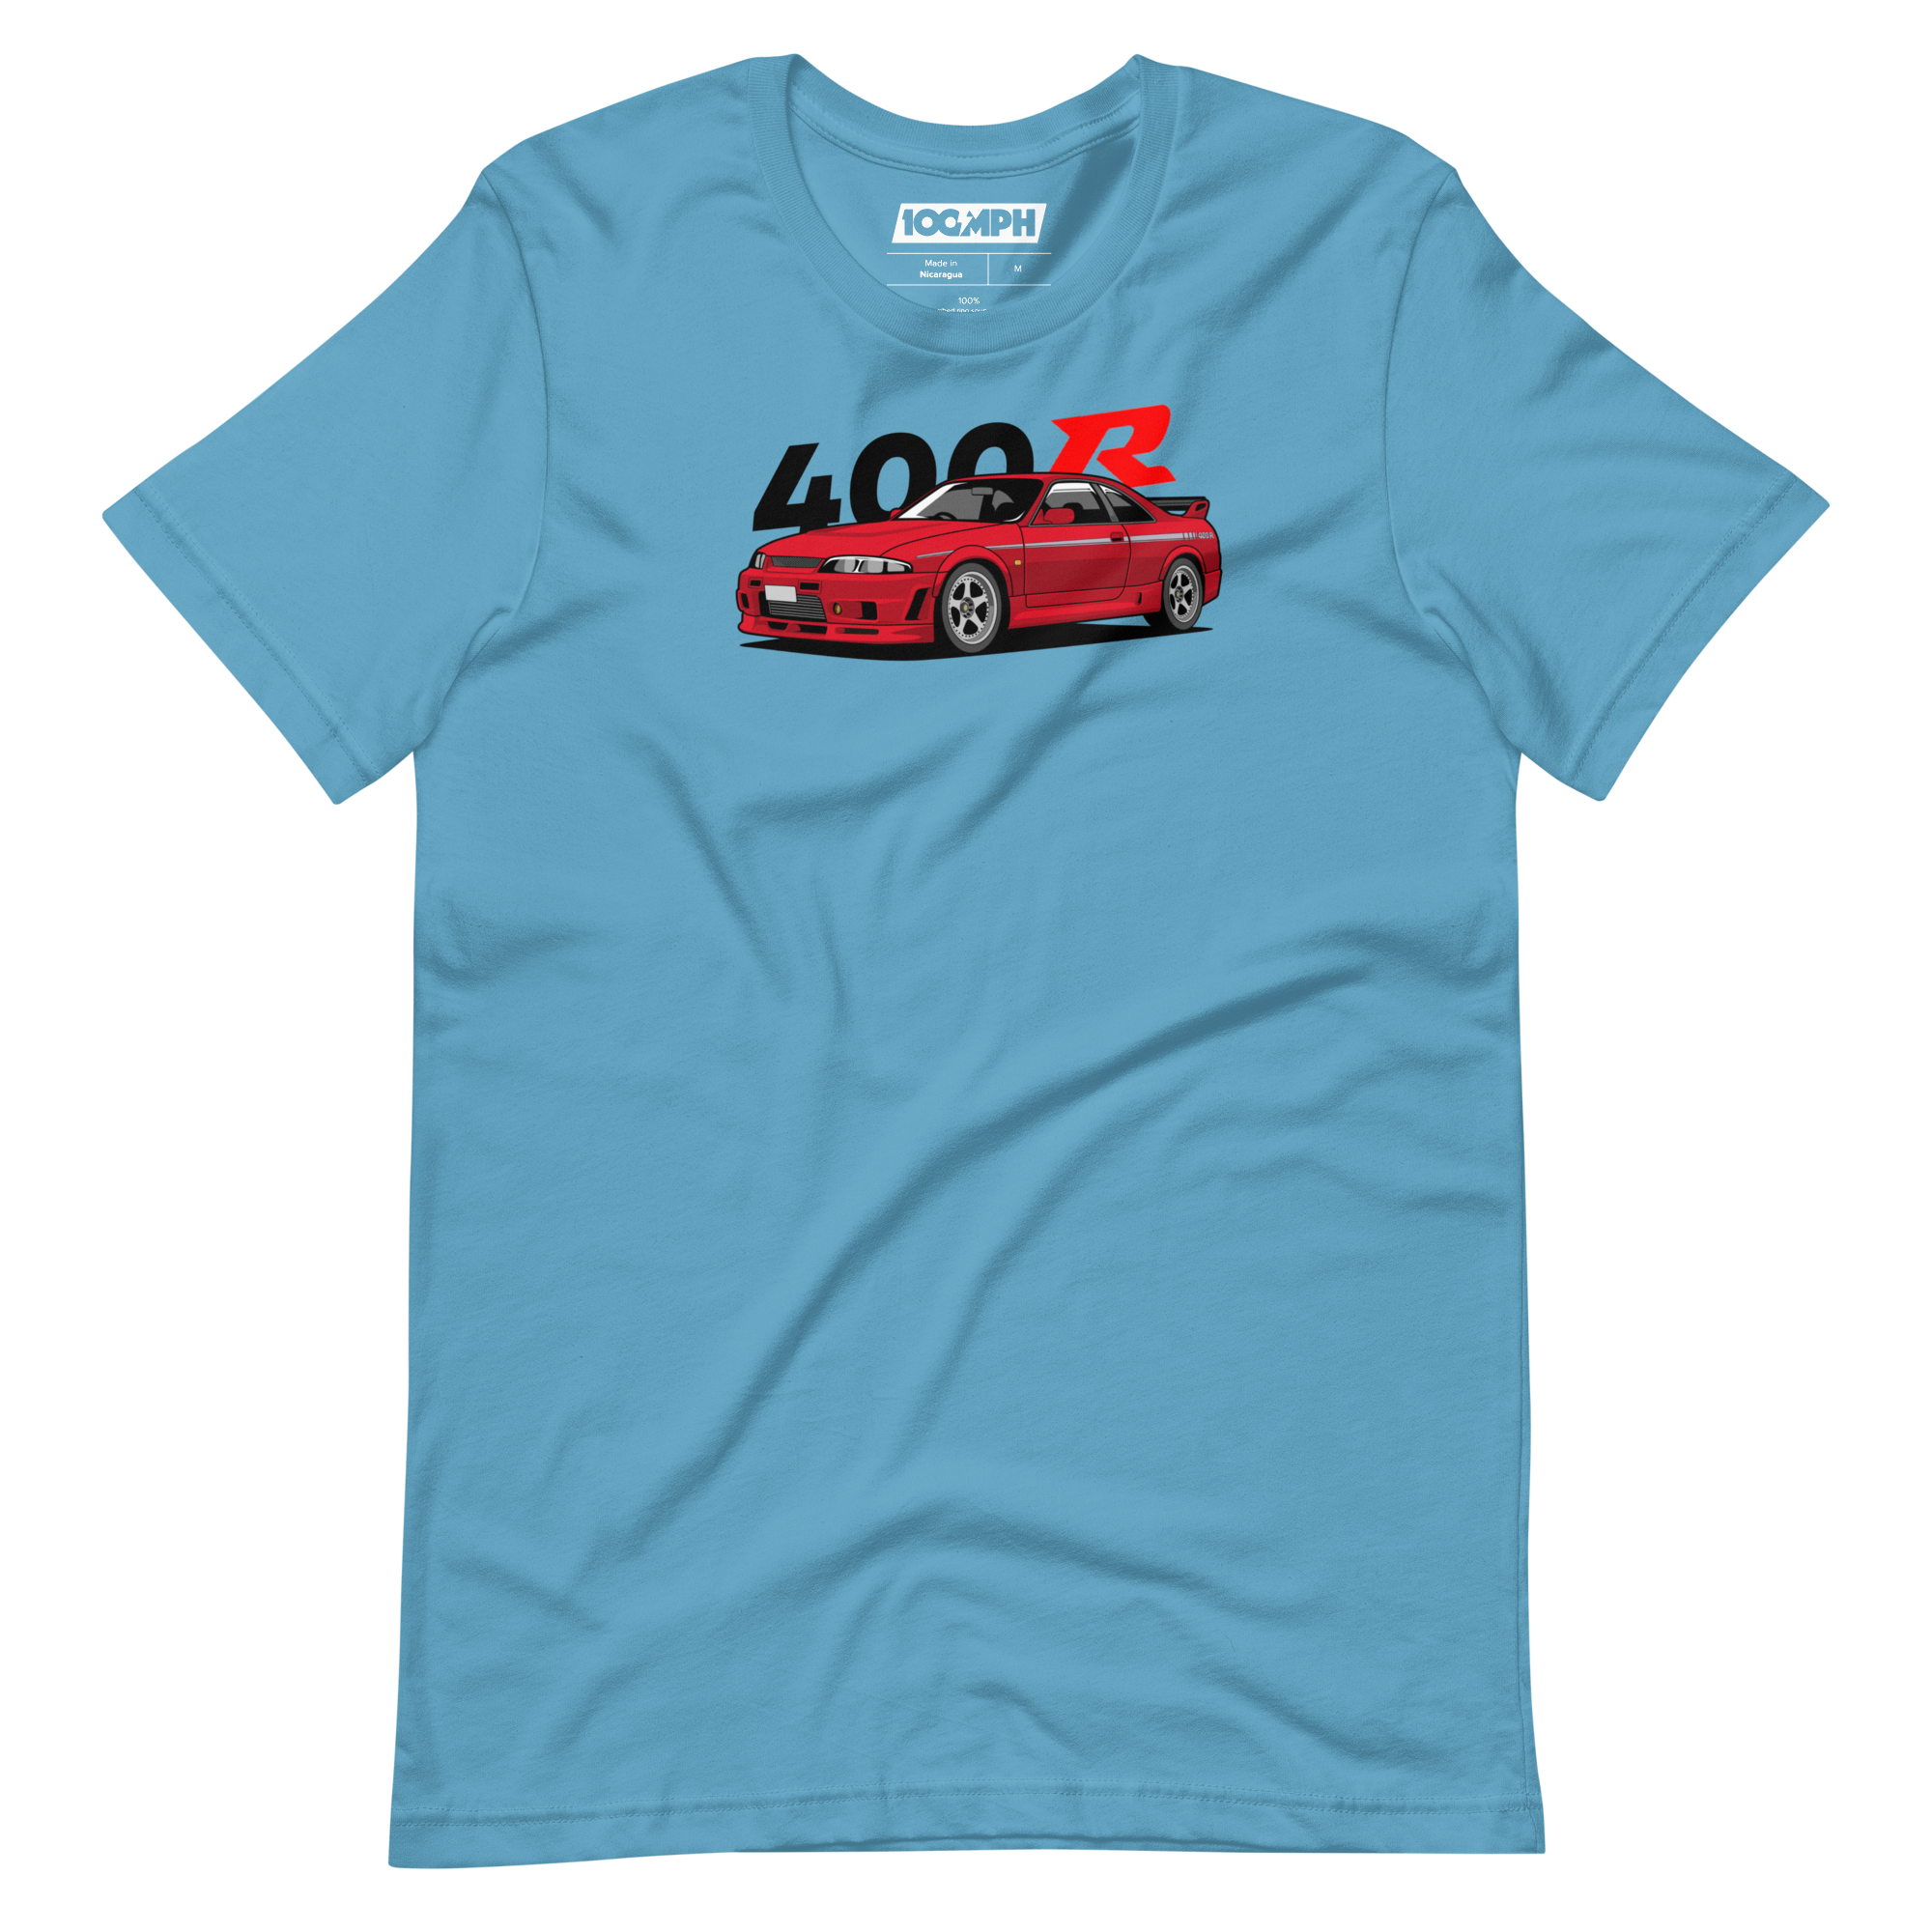 Nissan Skyline R33 GT-R Nismo 400R